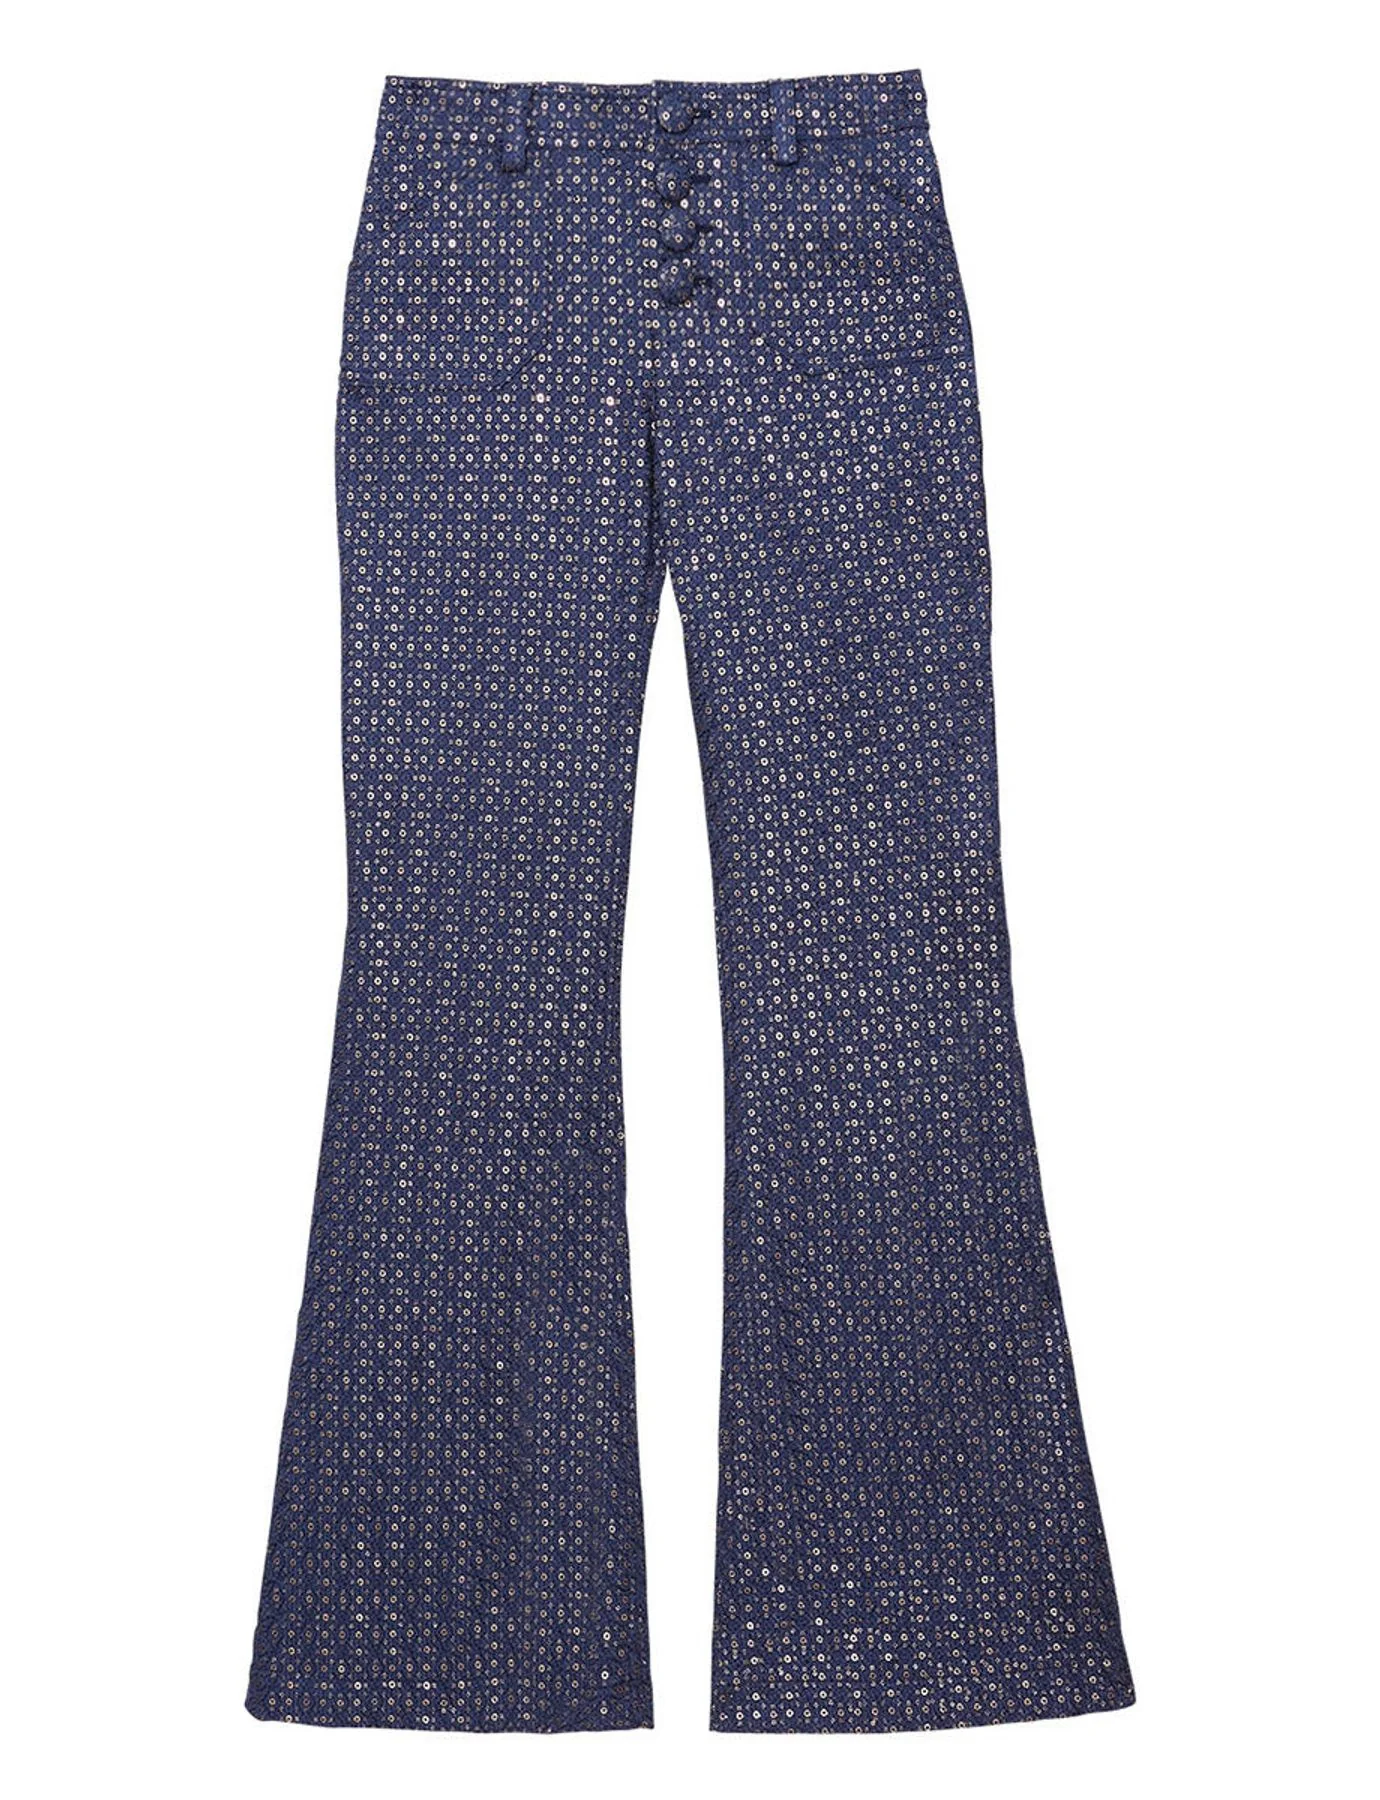 pantaloni-charlotte stampati blu navy